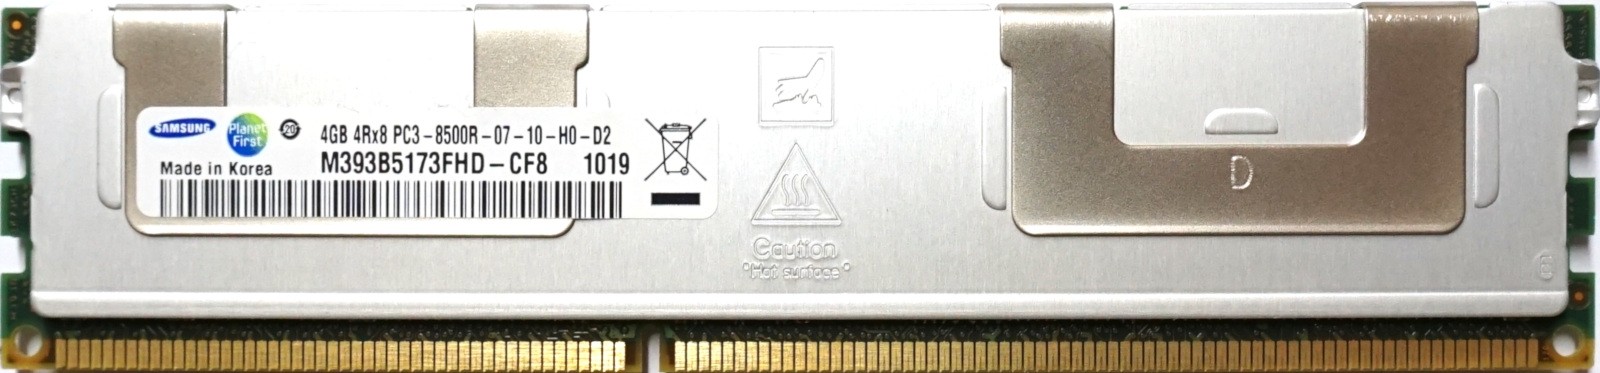 Samsung - 4GB PC3-8500R (DDR3-1066Mhz, 4RX8)